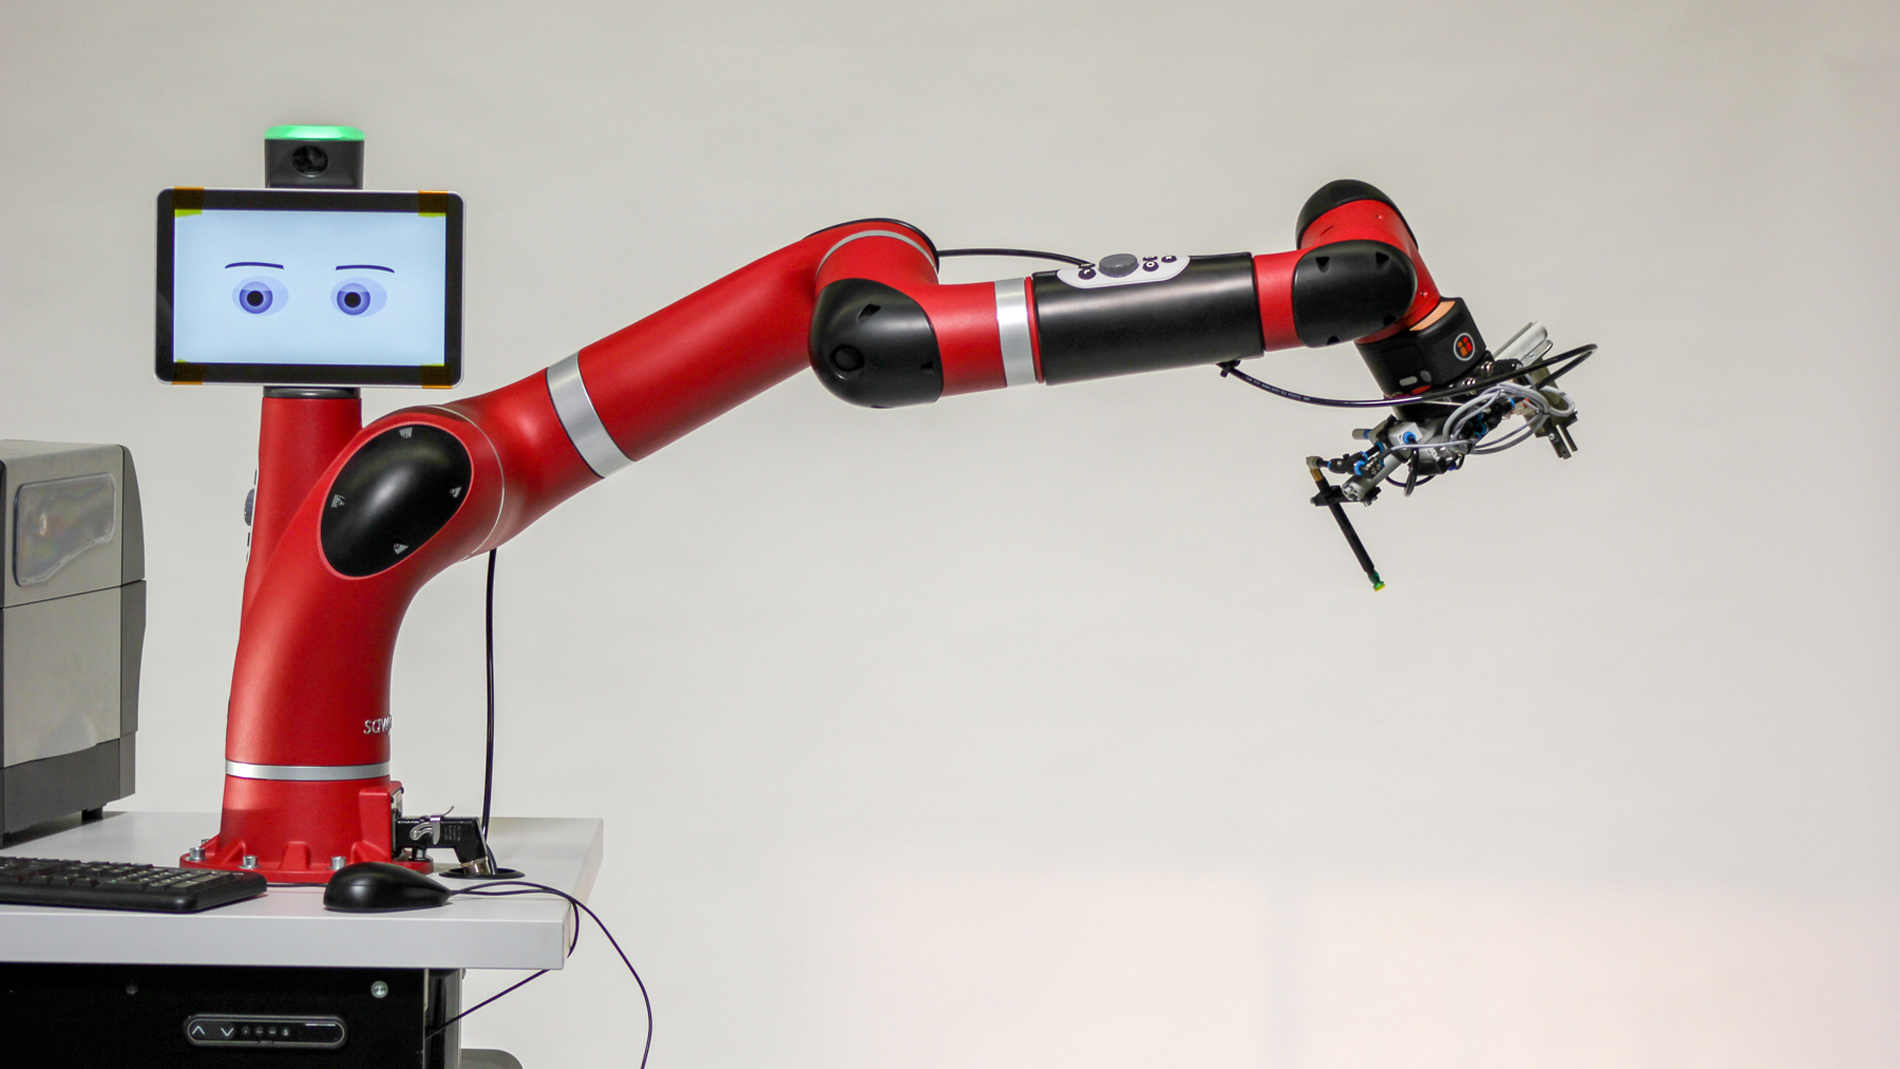 Bild 3: Mit einem Roboterarm kann sogar der Prozess des Wareneingangs voll automatisiert werden. (Bild: MODI)